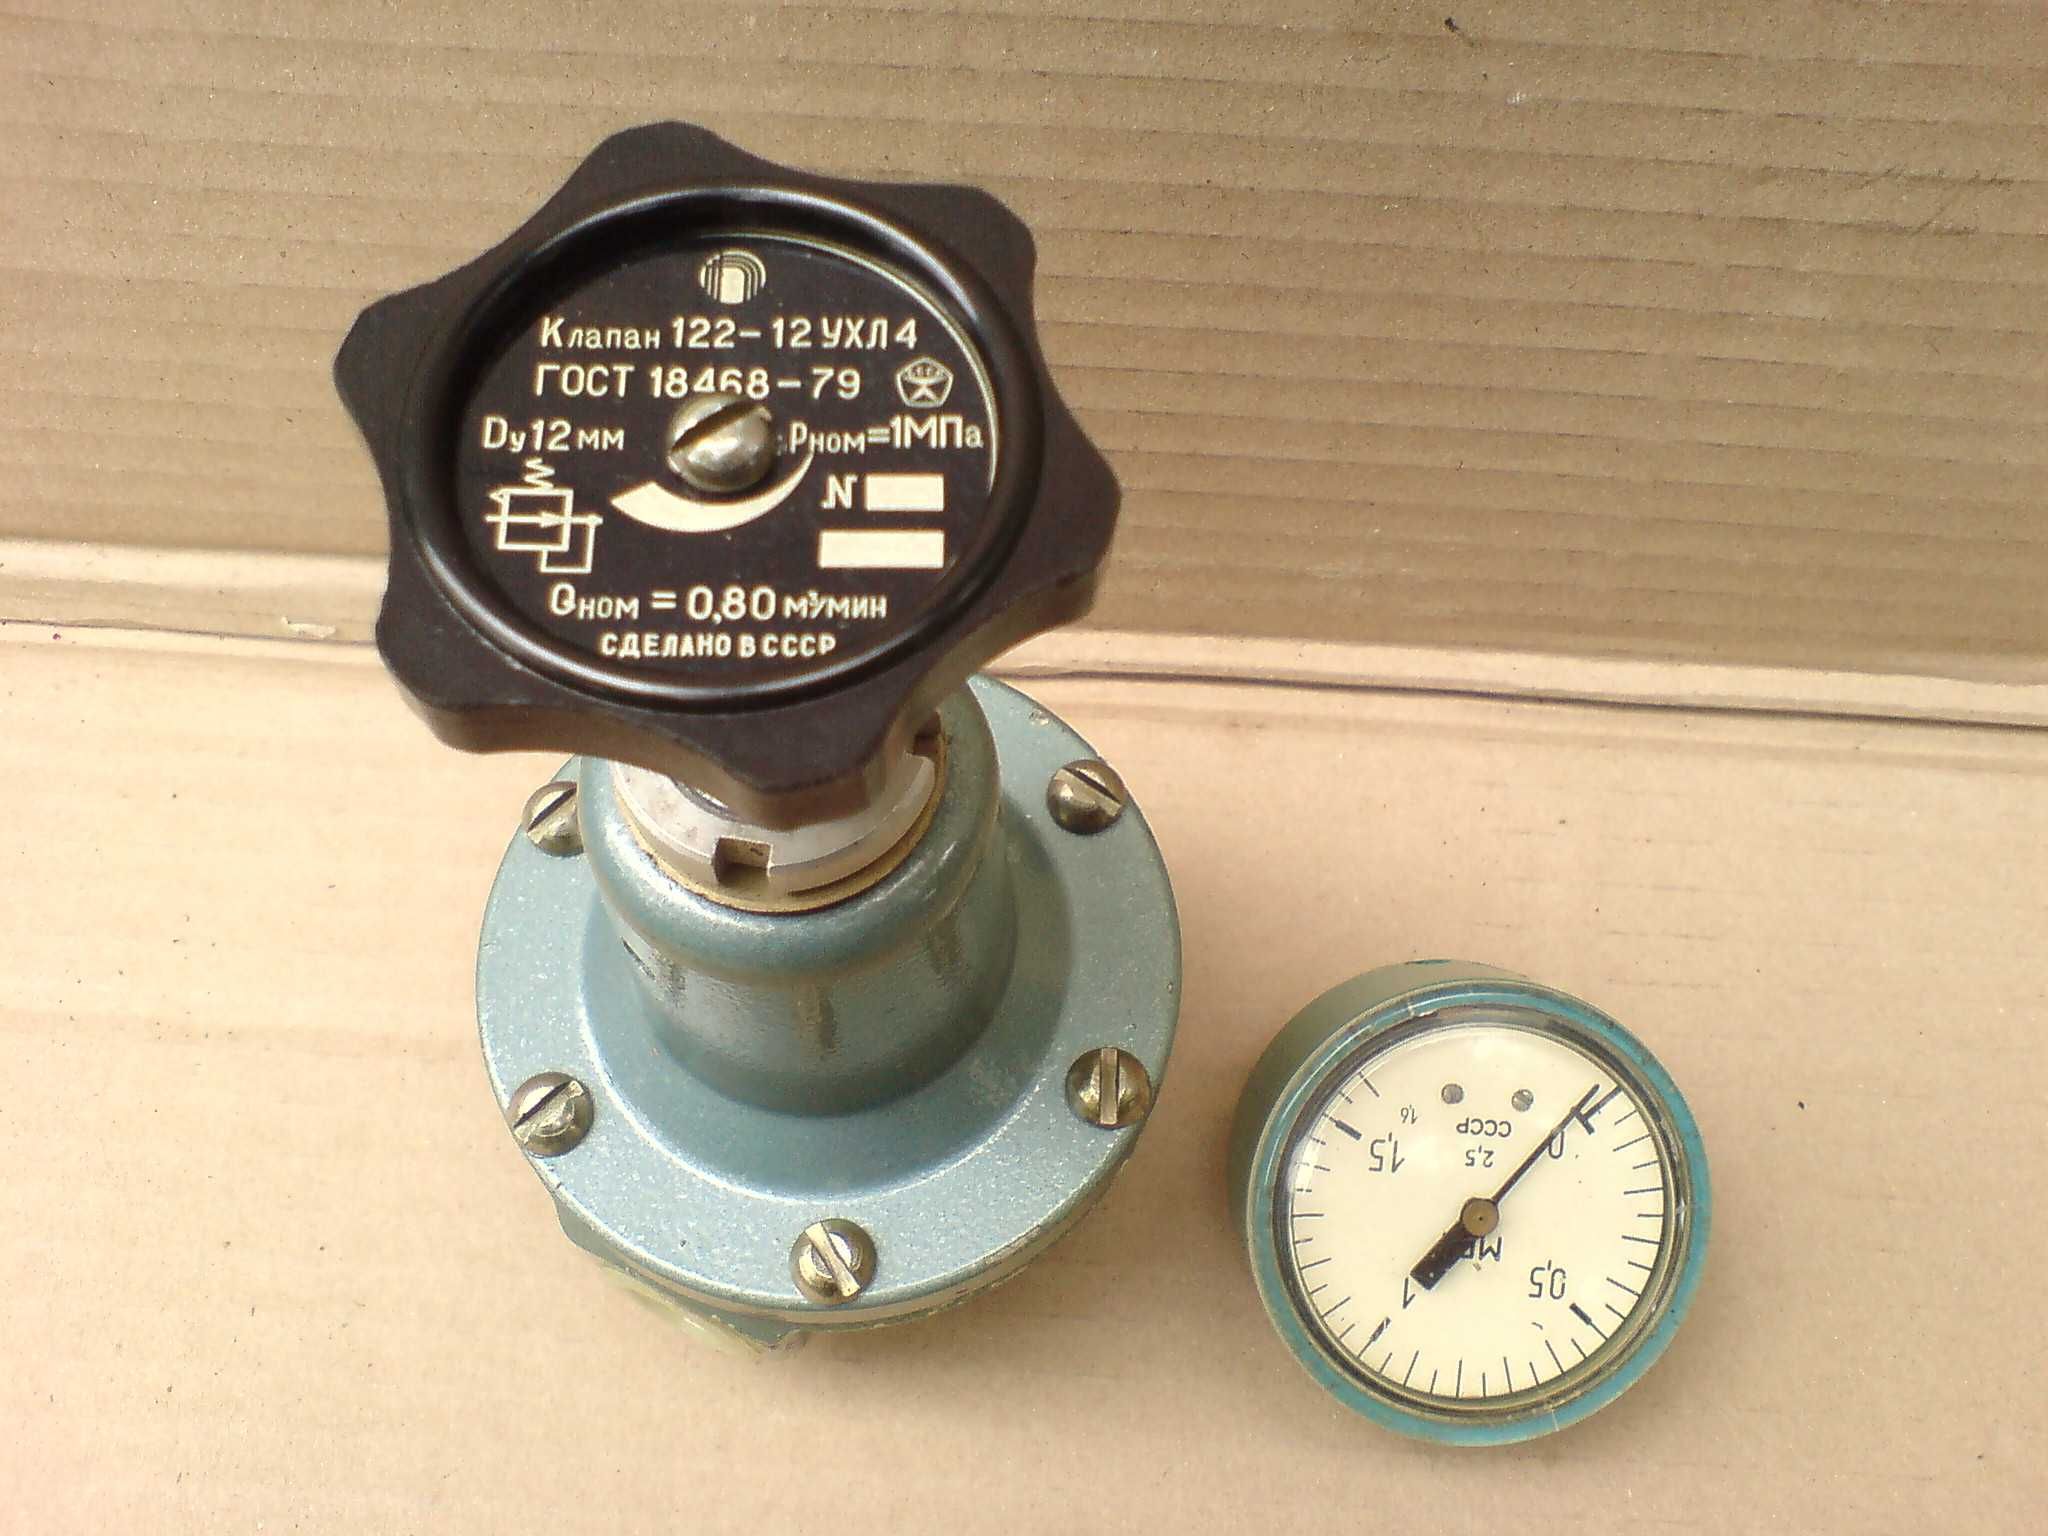 Воздушный регулятор давления с фильтром